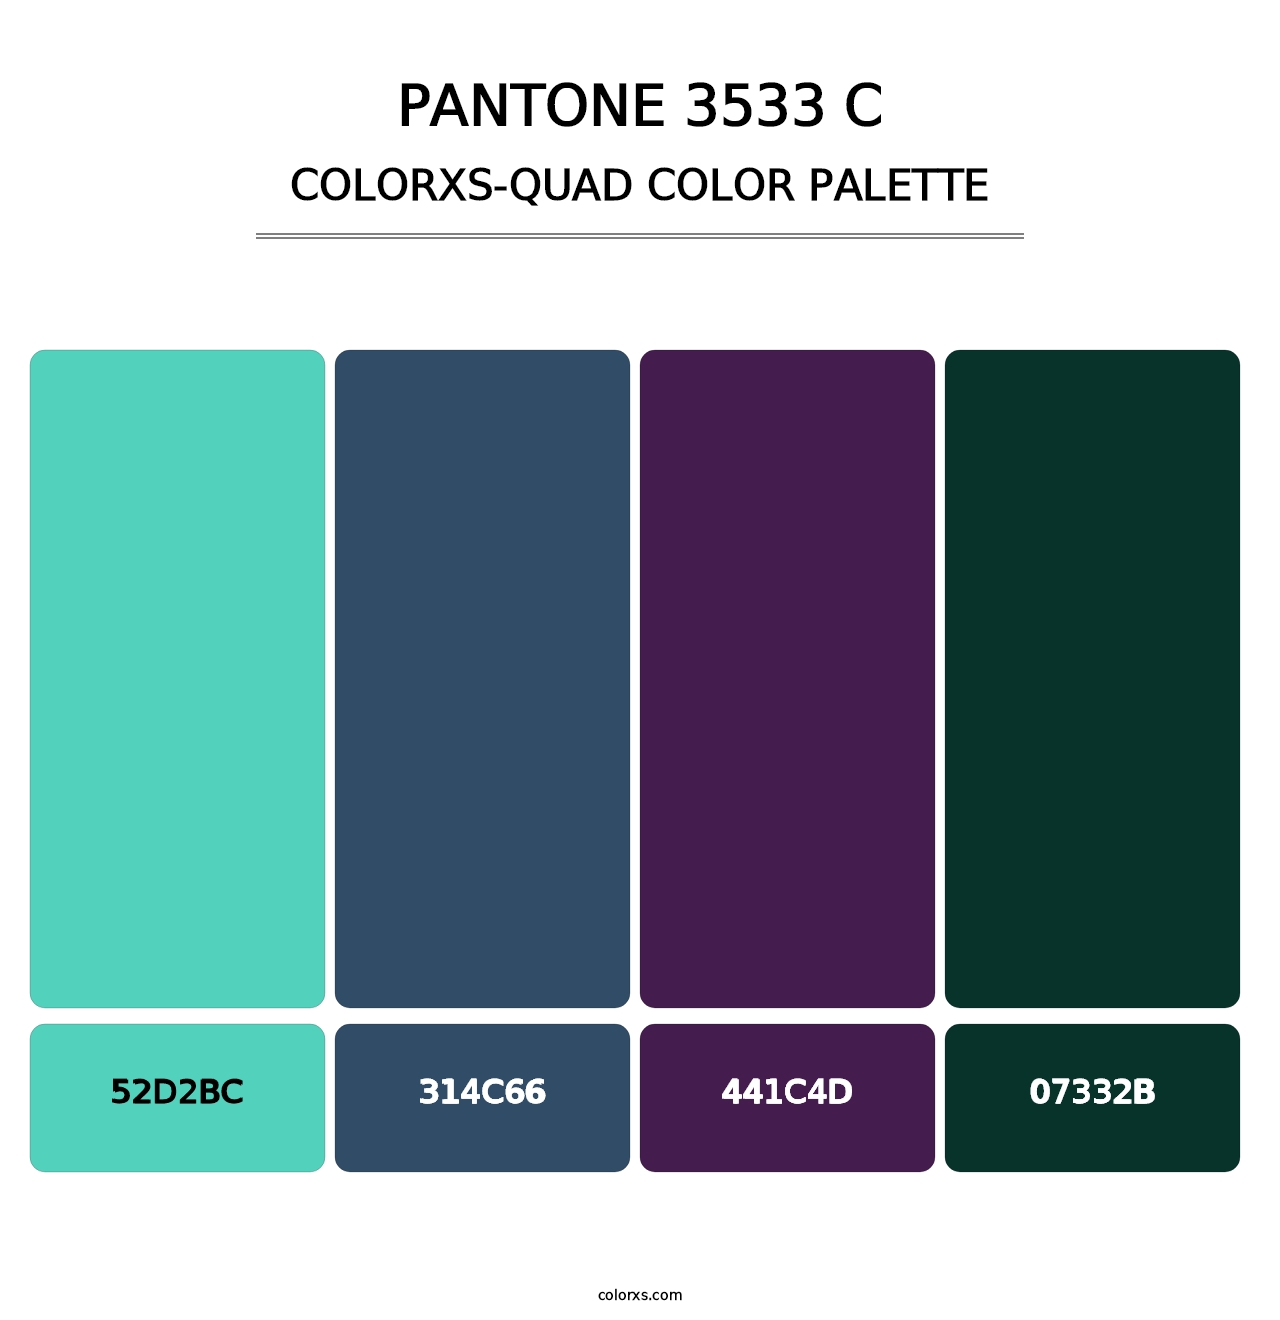 PANTONE 3533 C - Colorxs Quad Palette